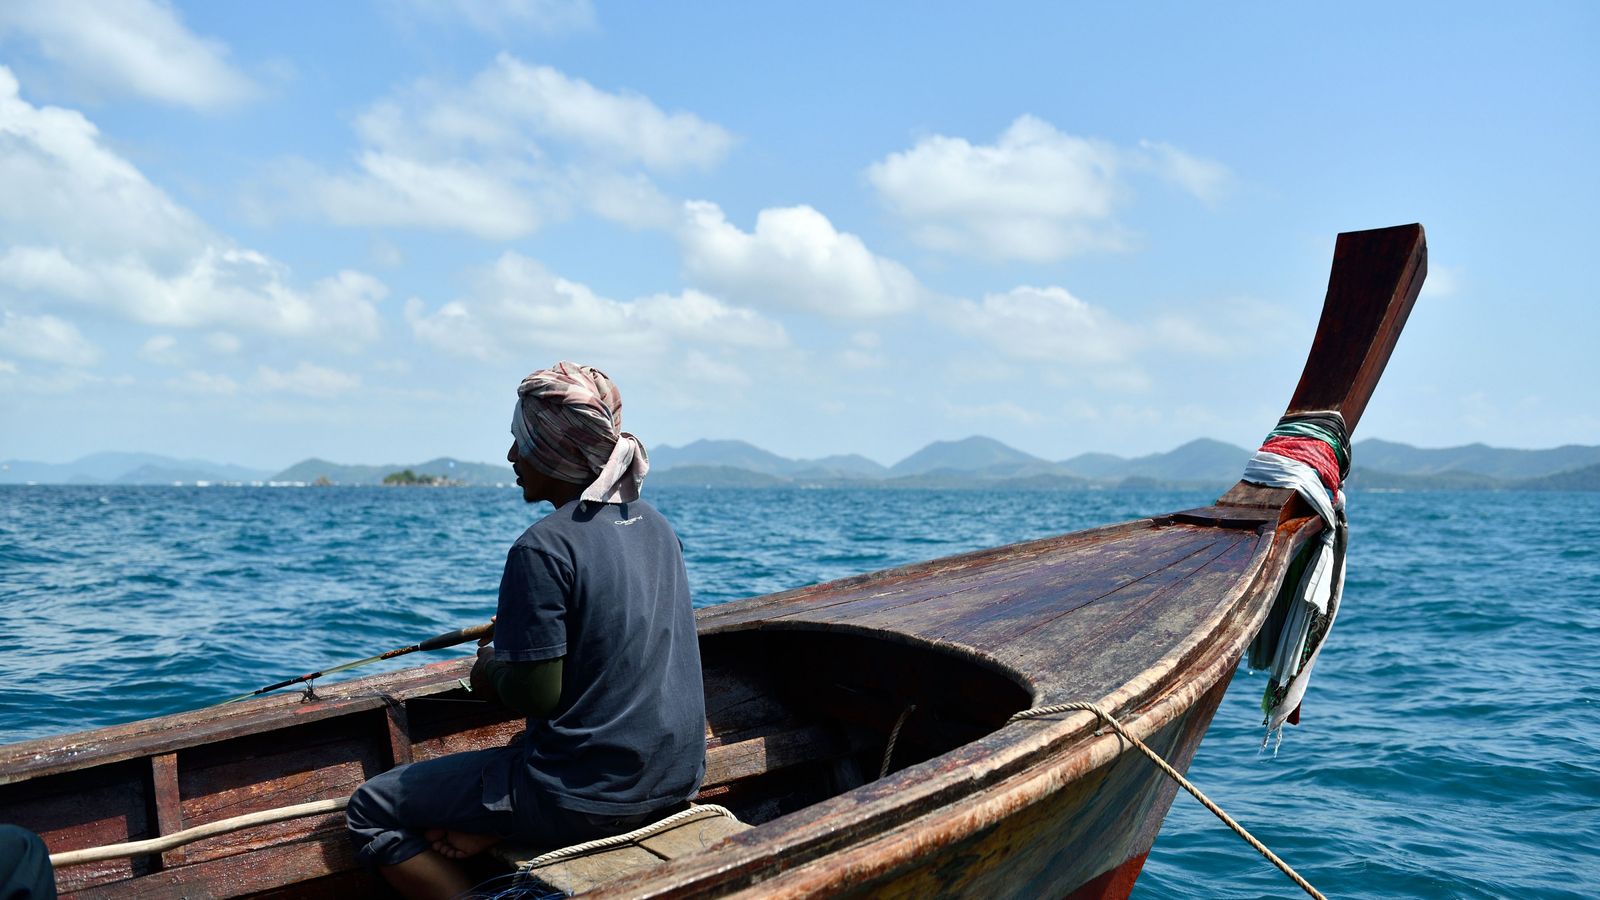 "Люди моря", Панама: индейцы Куна, архипелаг в наследство |16+